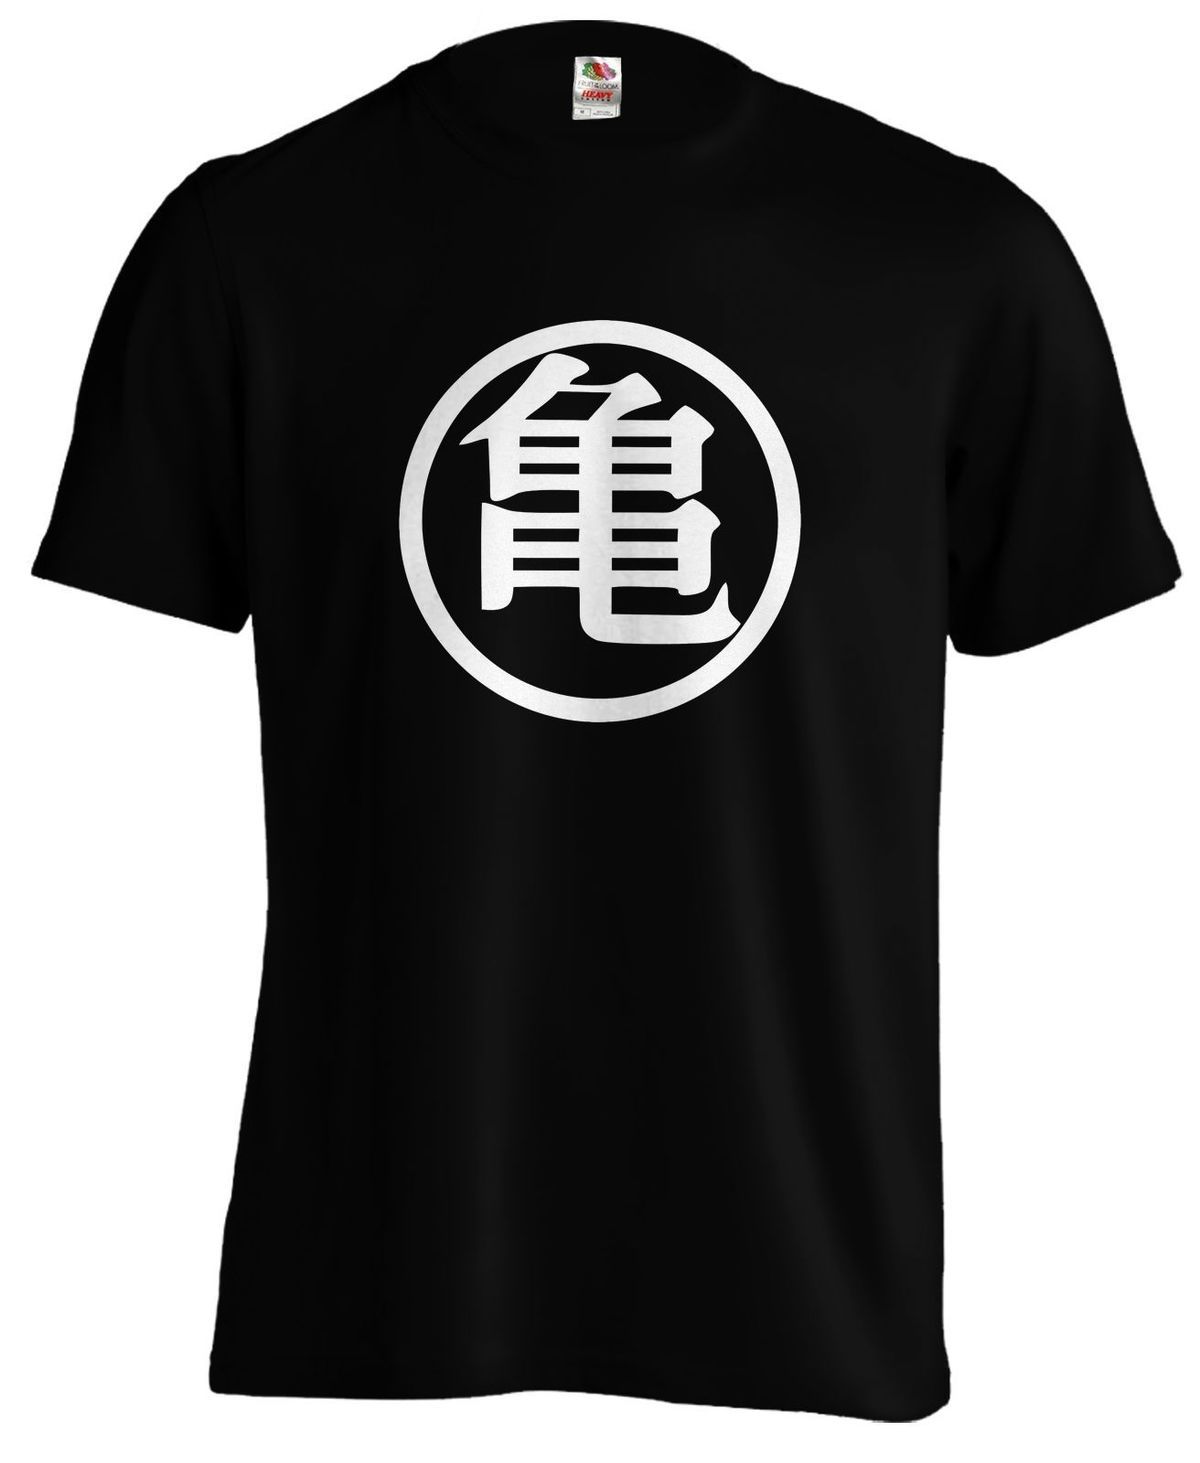 Dragonball Turtle School Symbol Master Roshi Kamesennin Z Anime Manga Tshirt Tee Free Shipping Fashion Classic Unique T Shirt